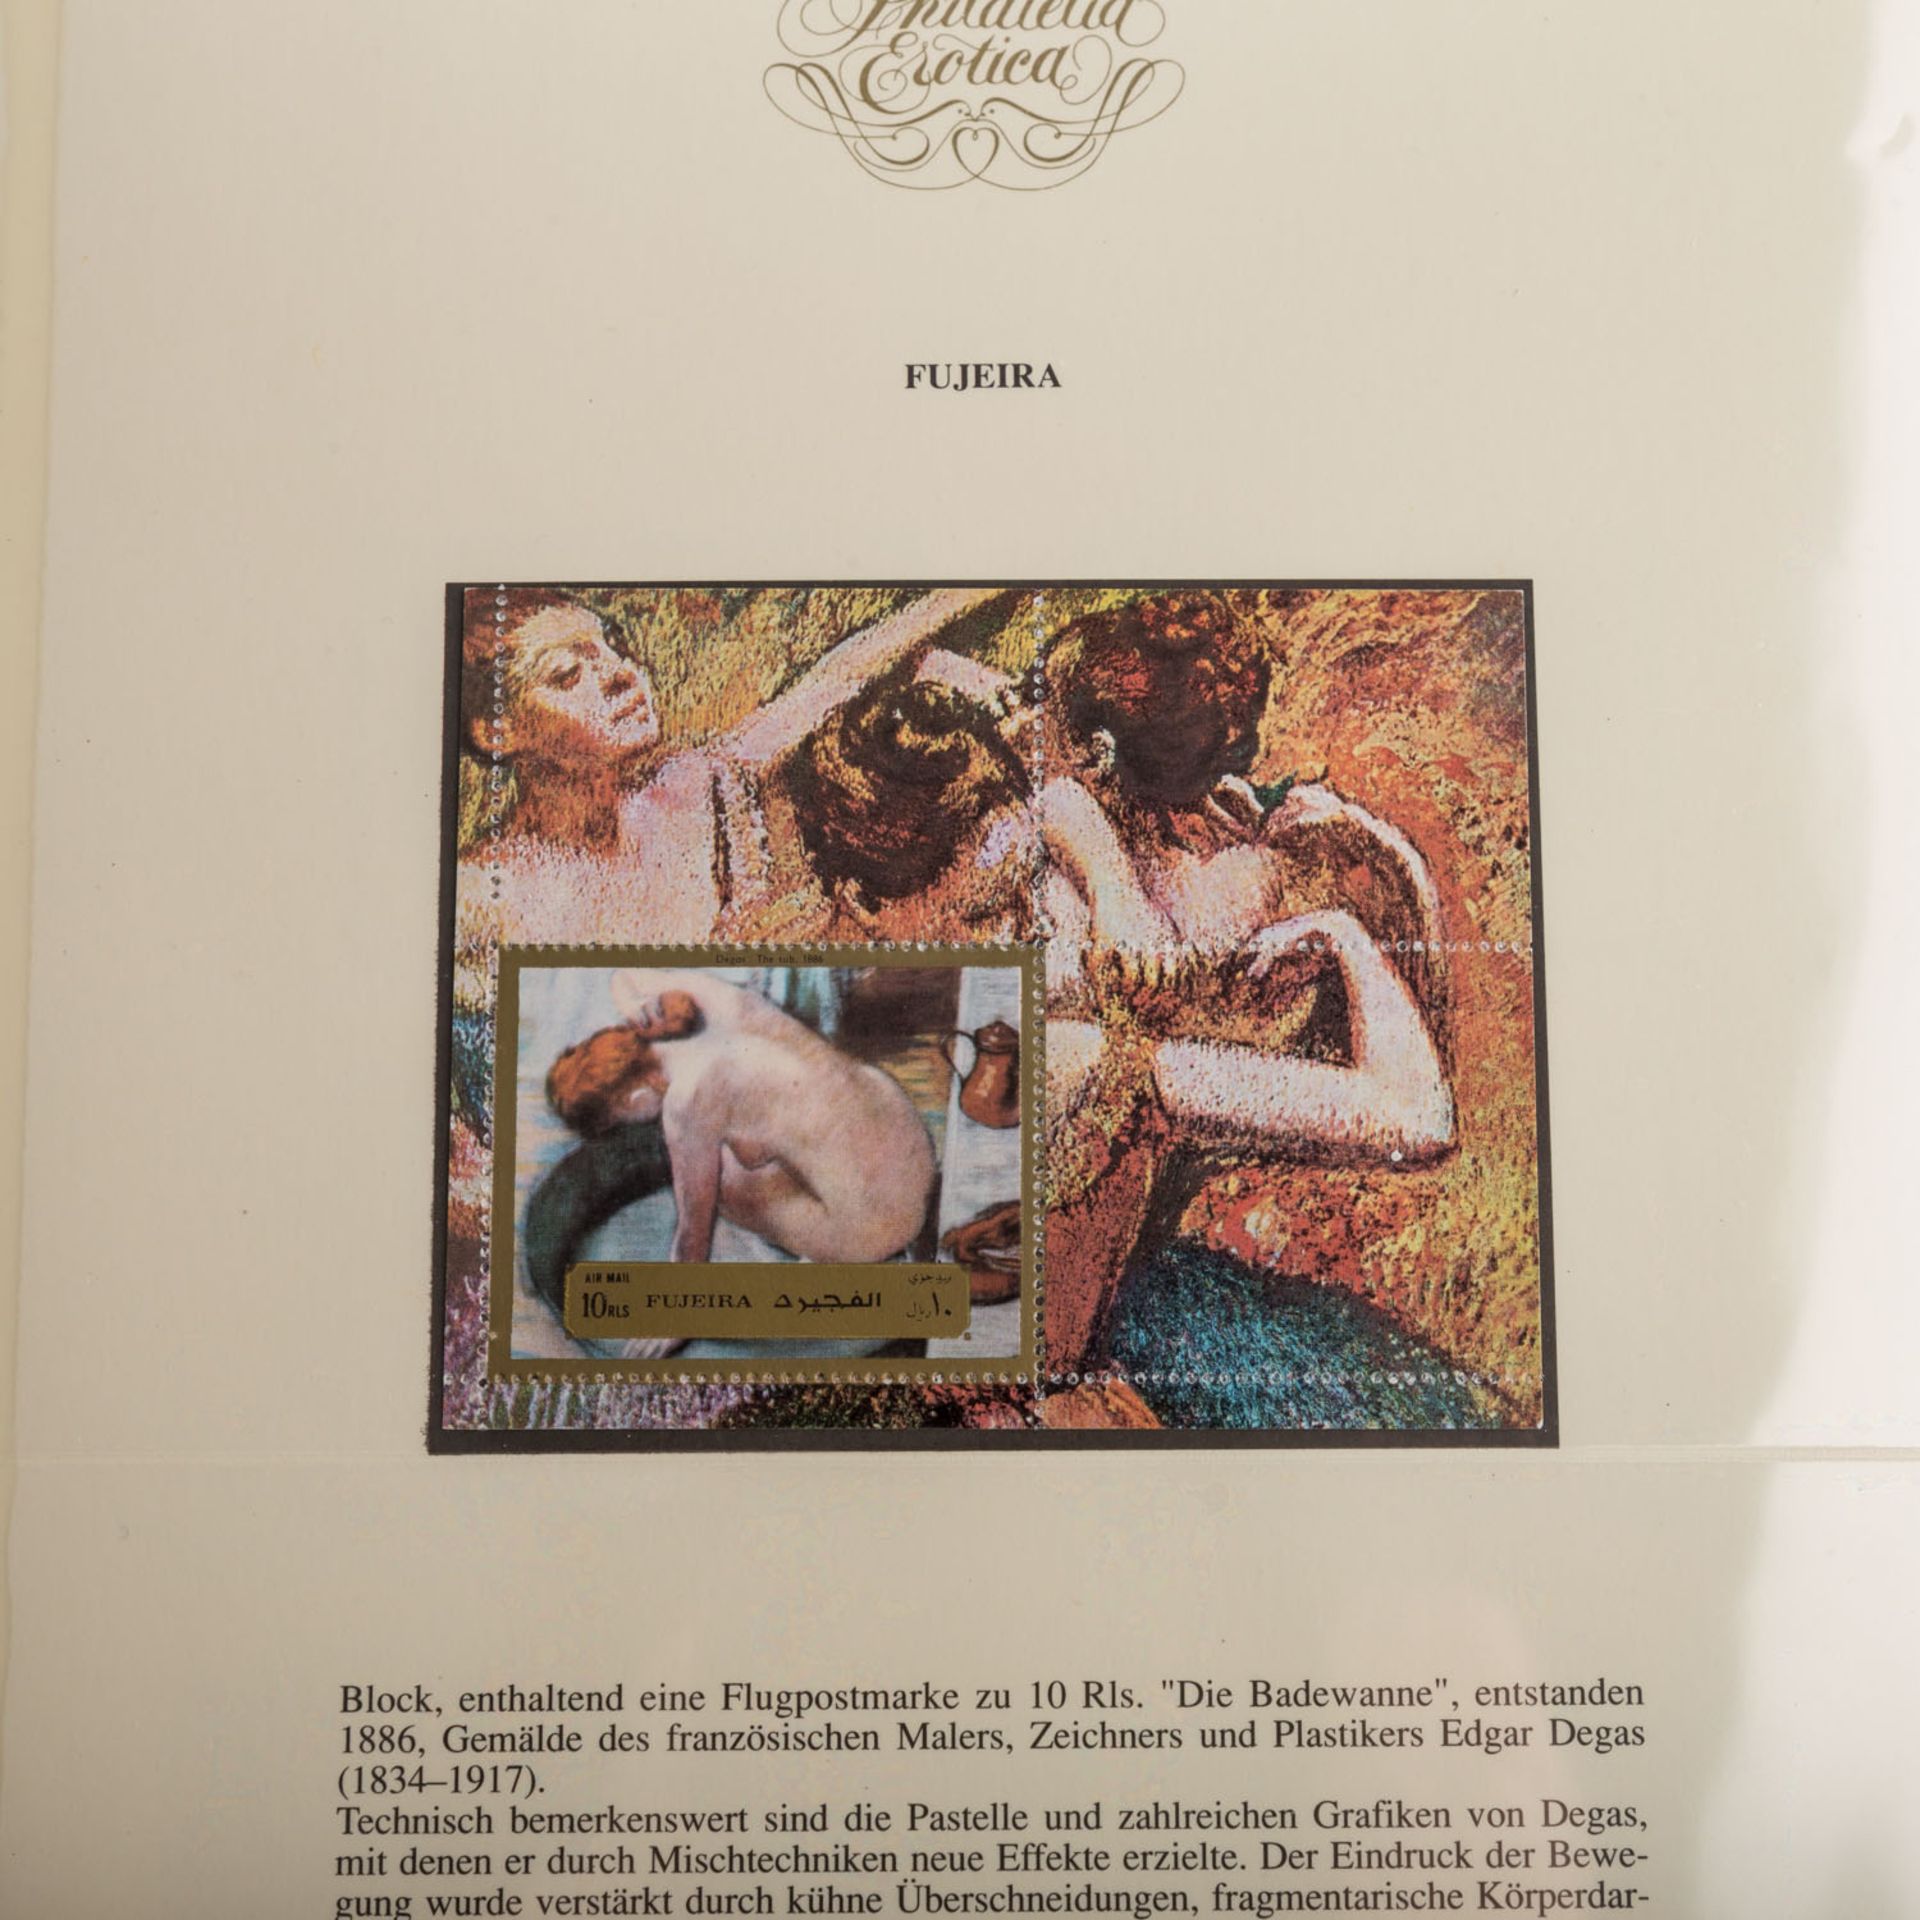 Thematik Erotika - Erstklassike, dreibändige Sammlung,ehemals sehr teuer im Abonnement erworben, - Bild 3 aus 11